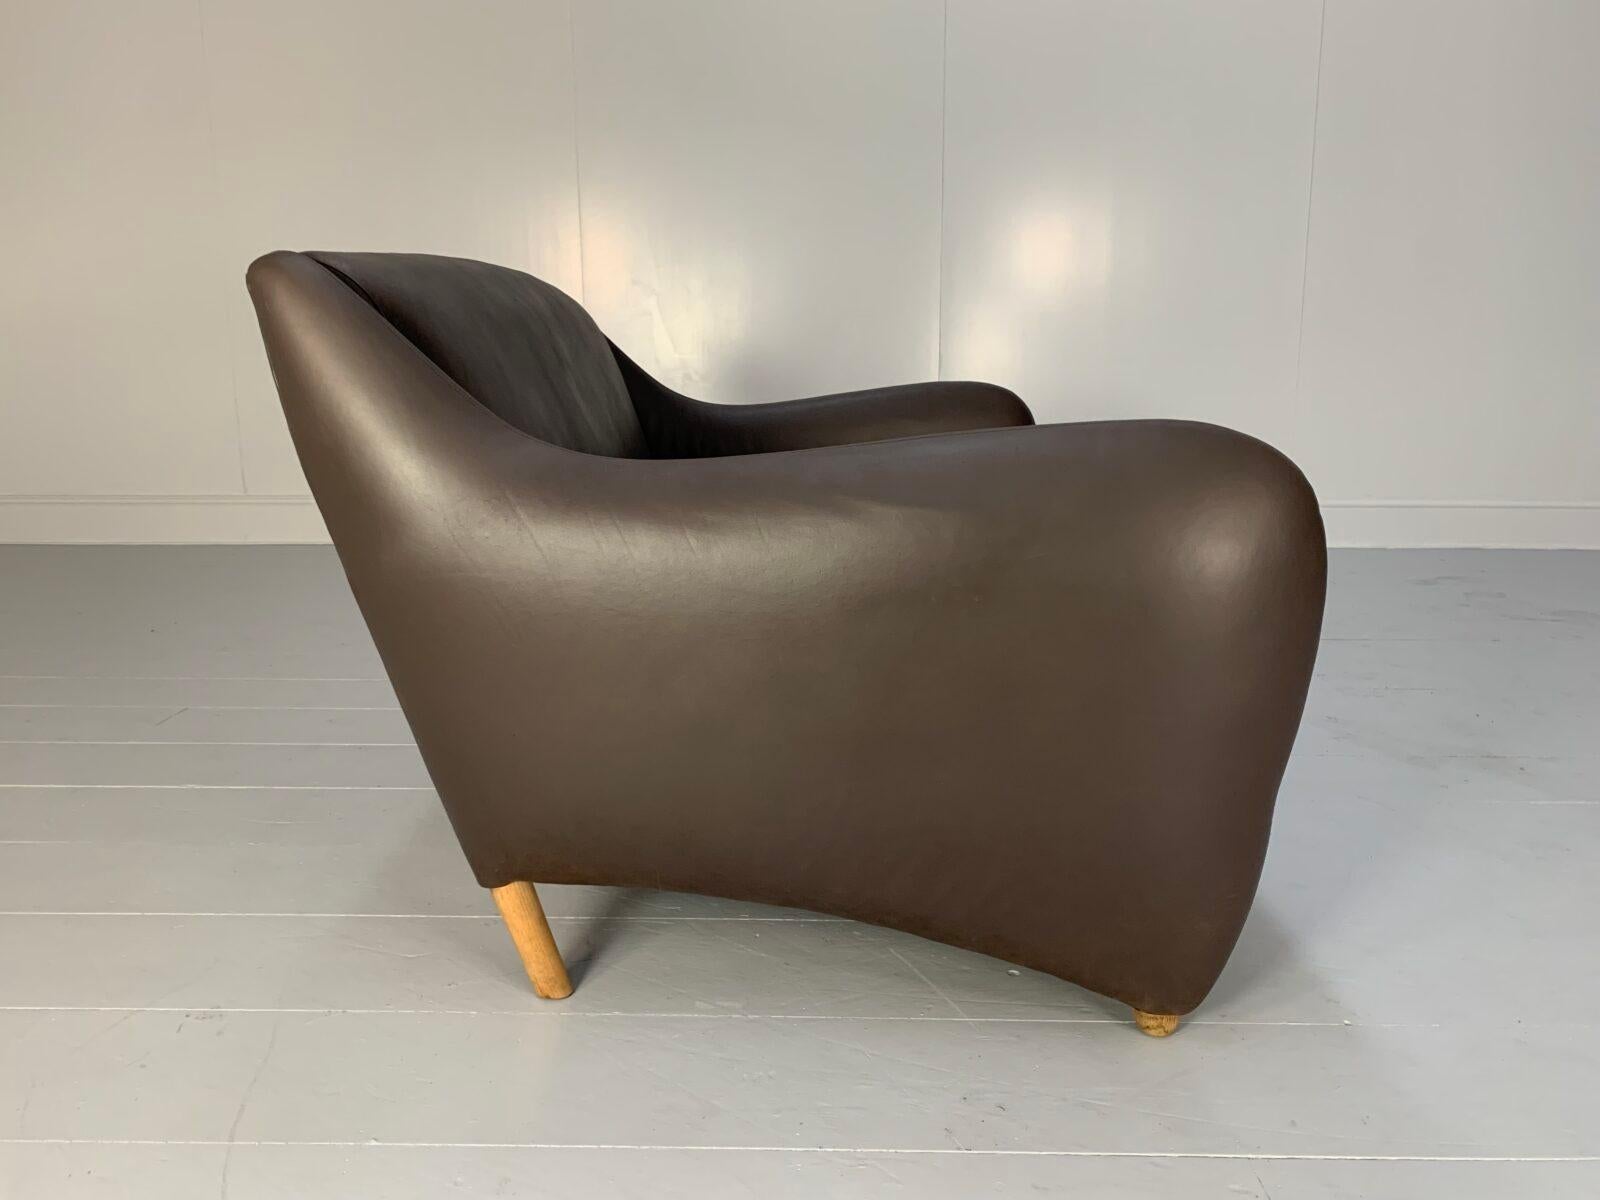 Contemporary SCP Conran Matthew Hilton “Balzac” 3-Seat Sofa – In Dark Brown Leather